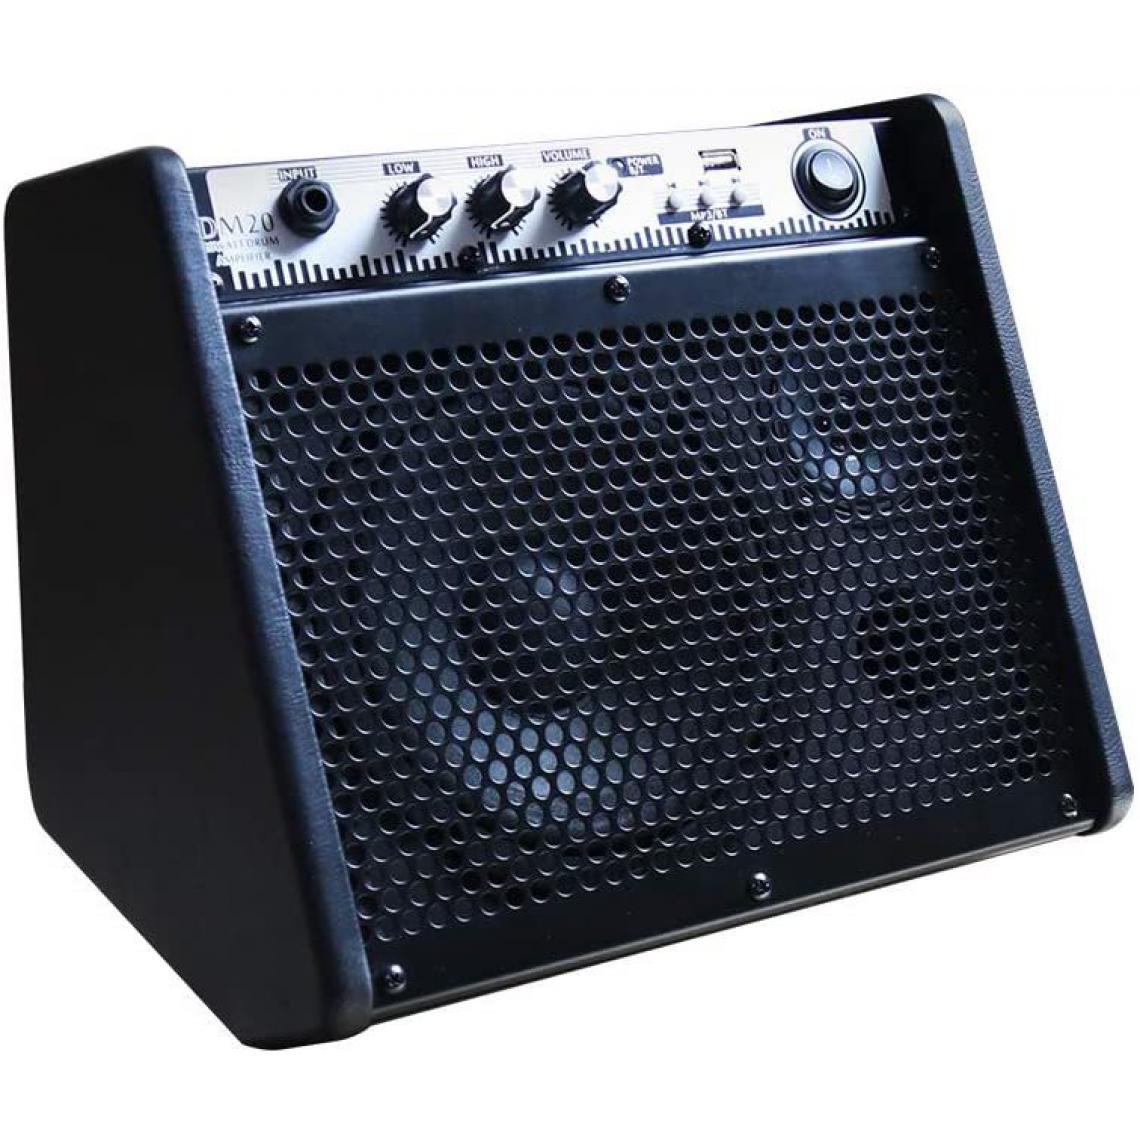 Chrono - Haut-parleur amplificateur de moniteur personnel Bluetooth Coolmusic DM20 pour amplificateurs de batterie électrique, clavier et guitare acoustique (20W)(Noir) - Enceintes Hifi